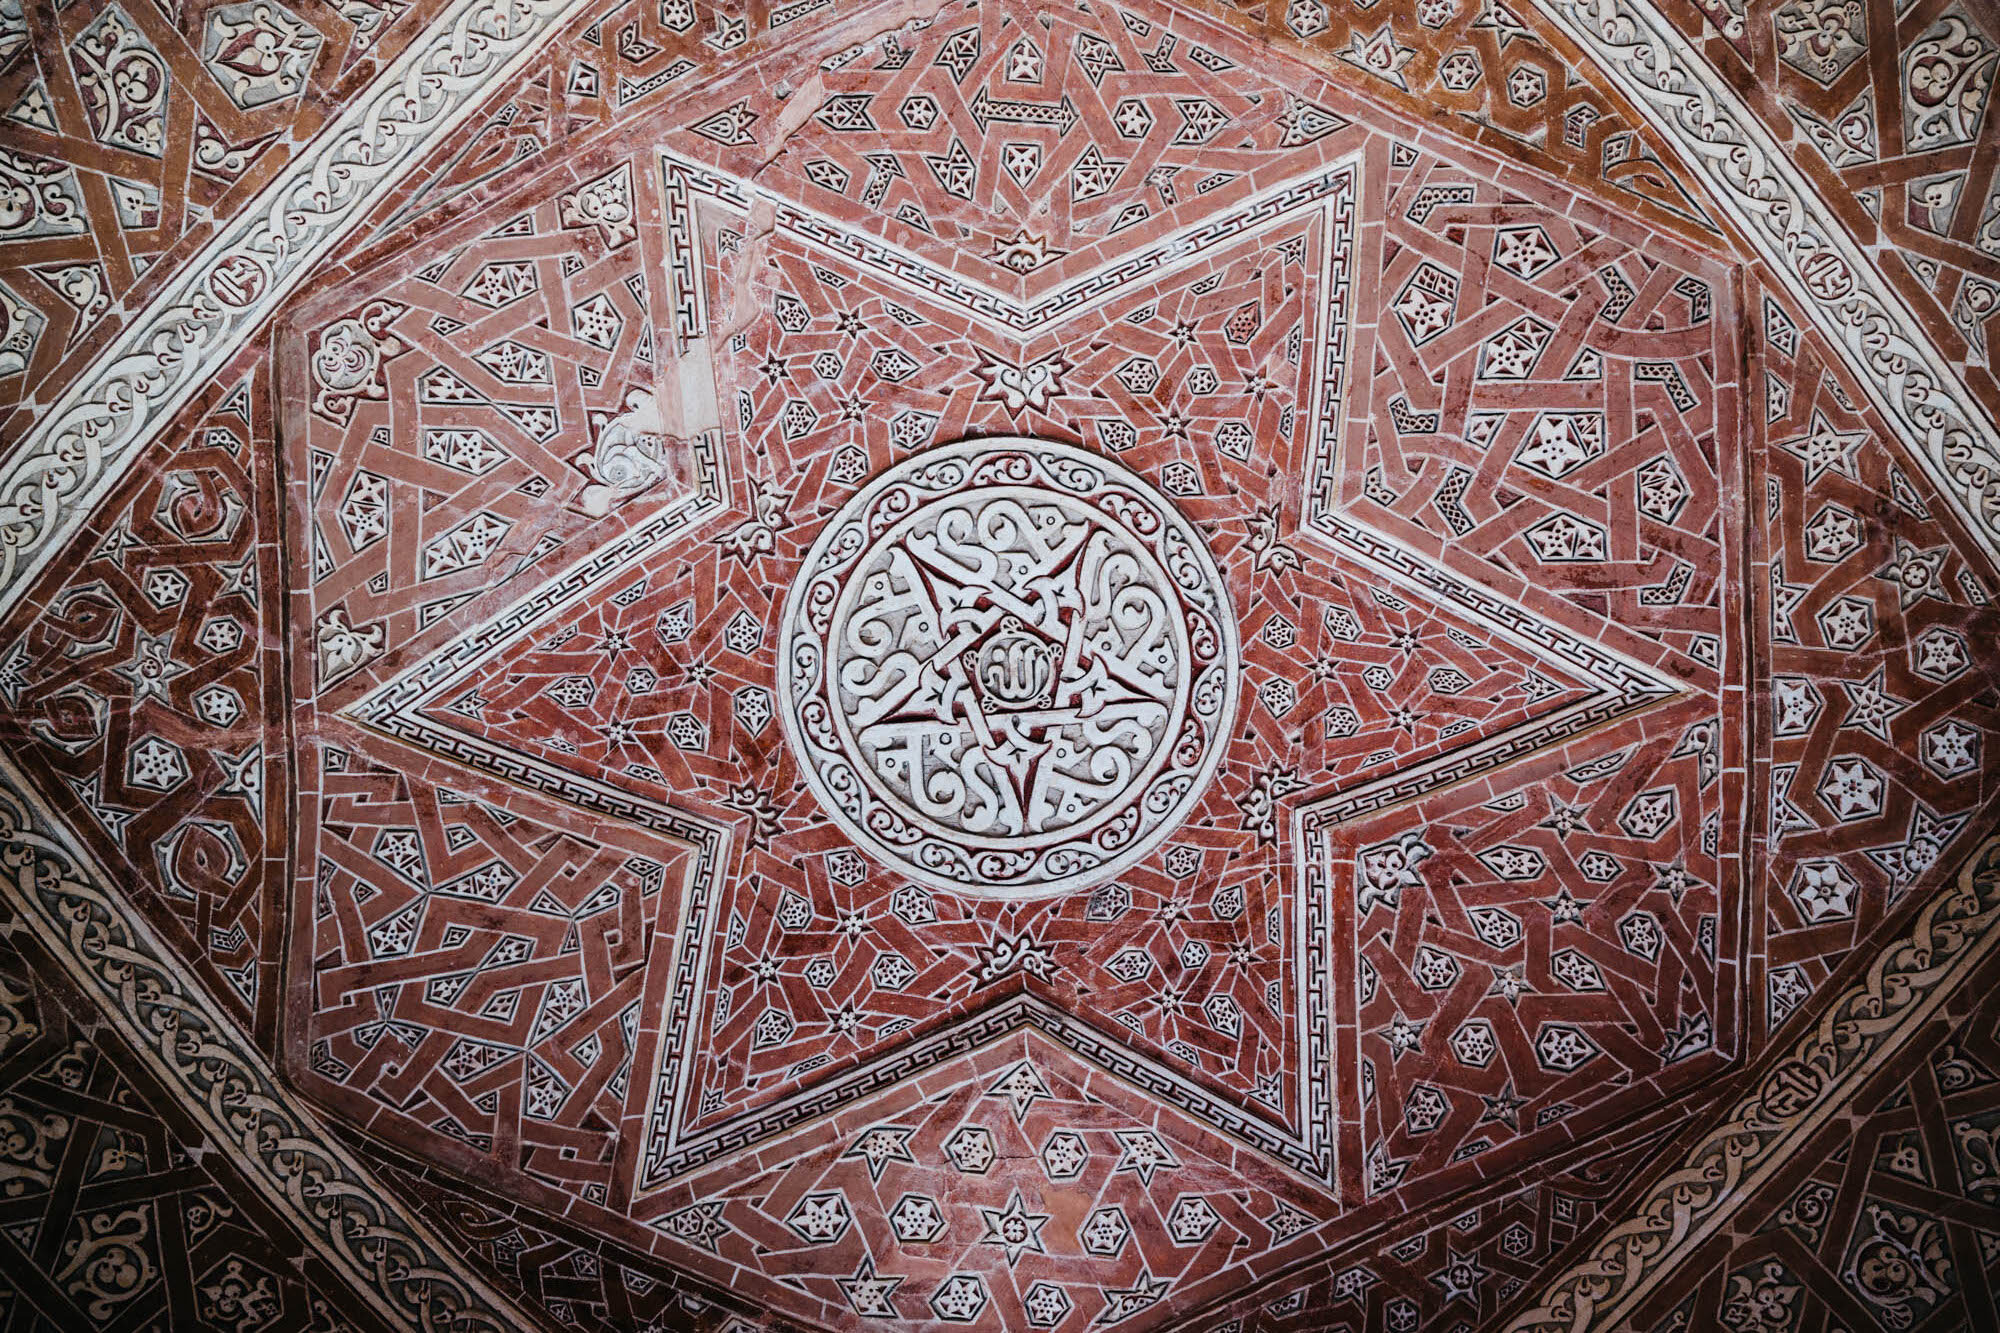  Ceiling details from Mausoleam of Oljaytu, Soltaniyeh 